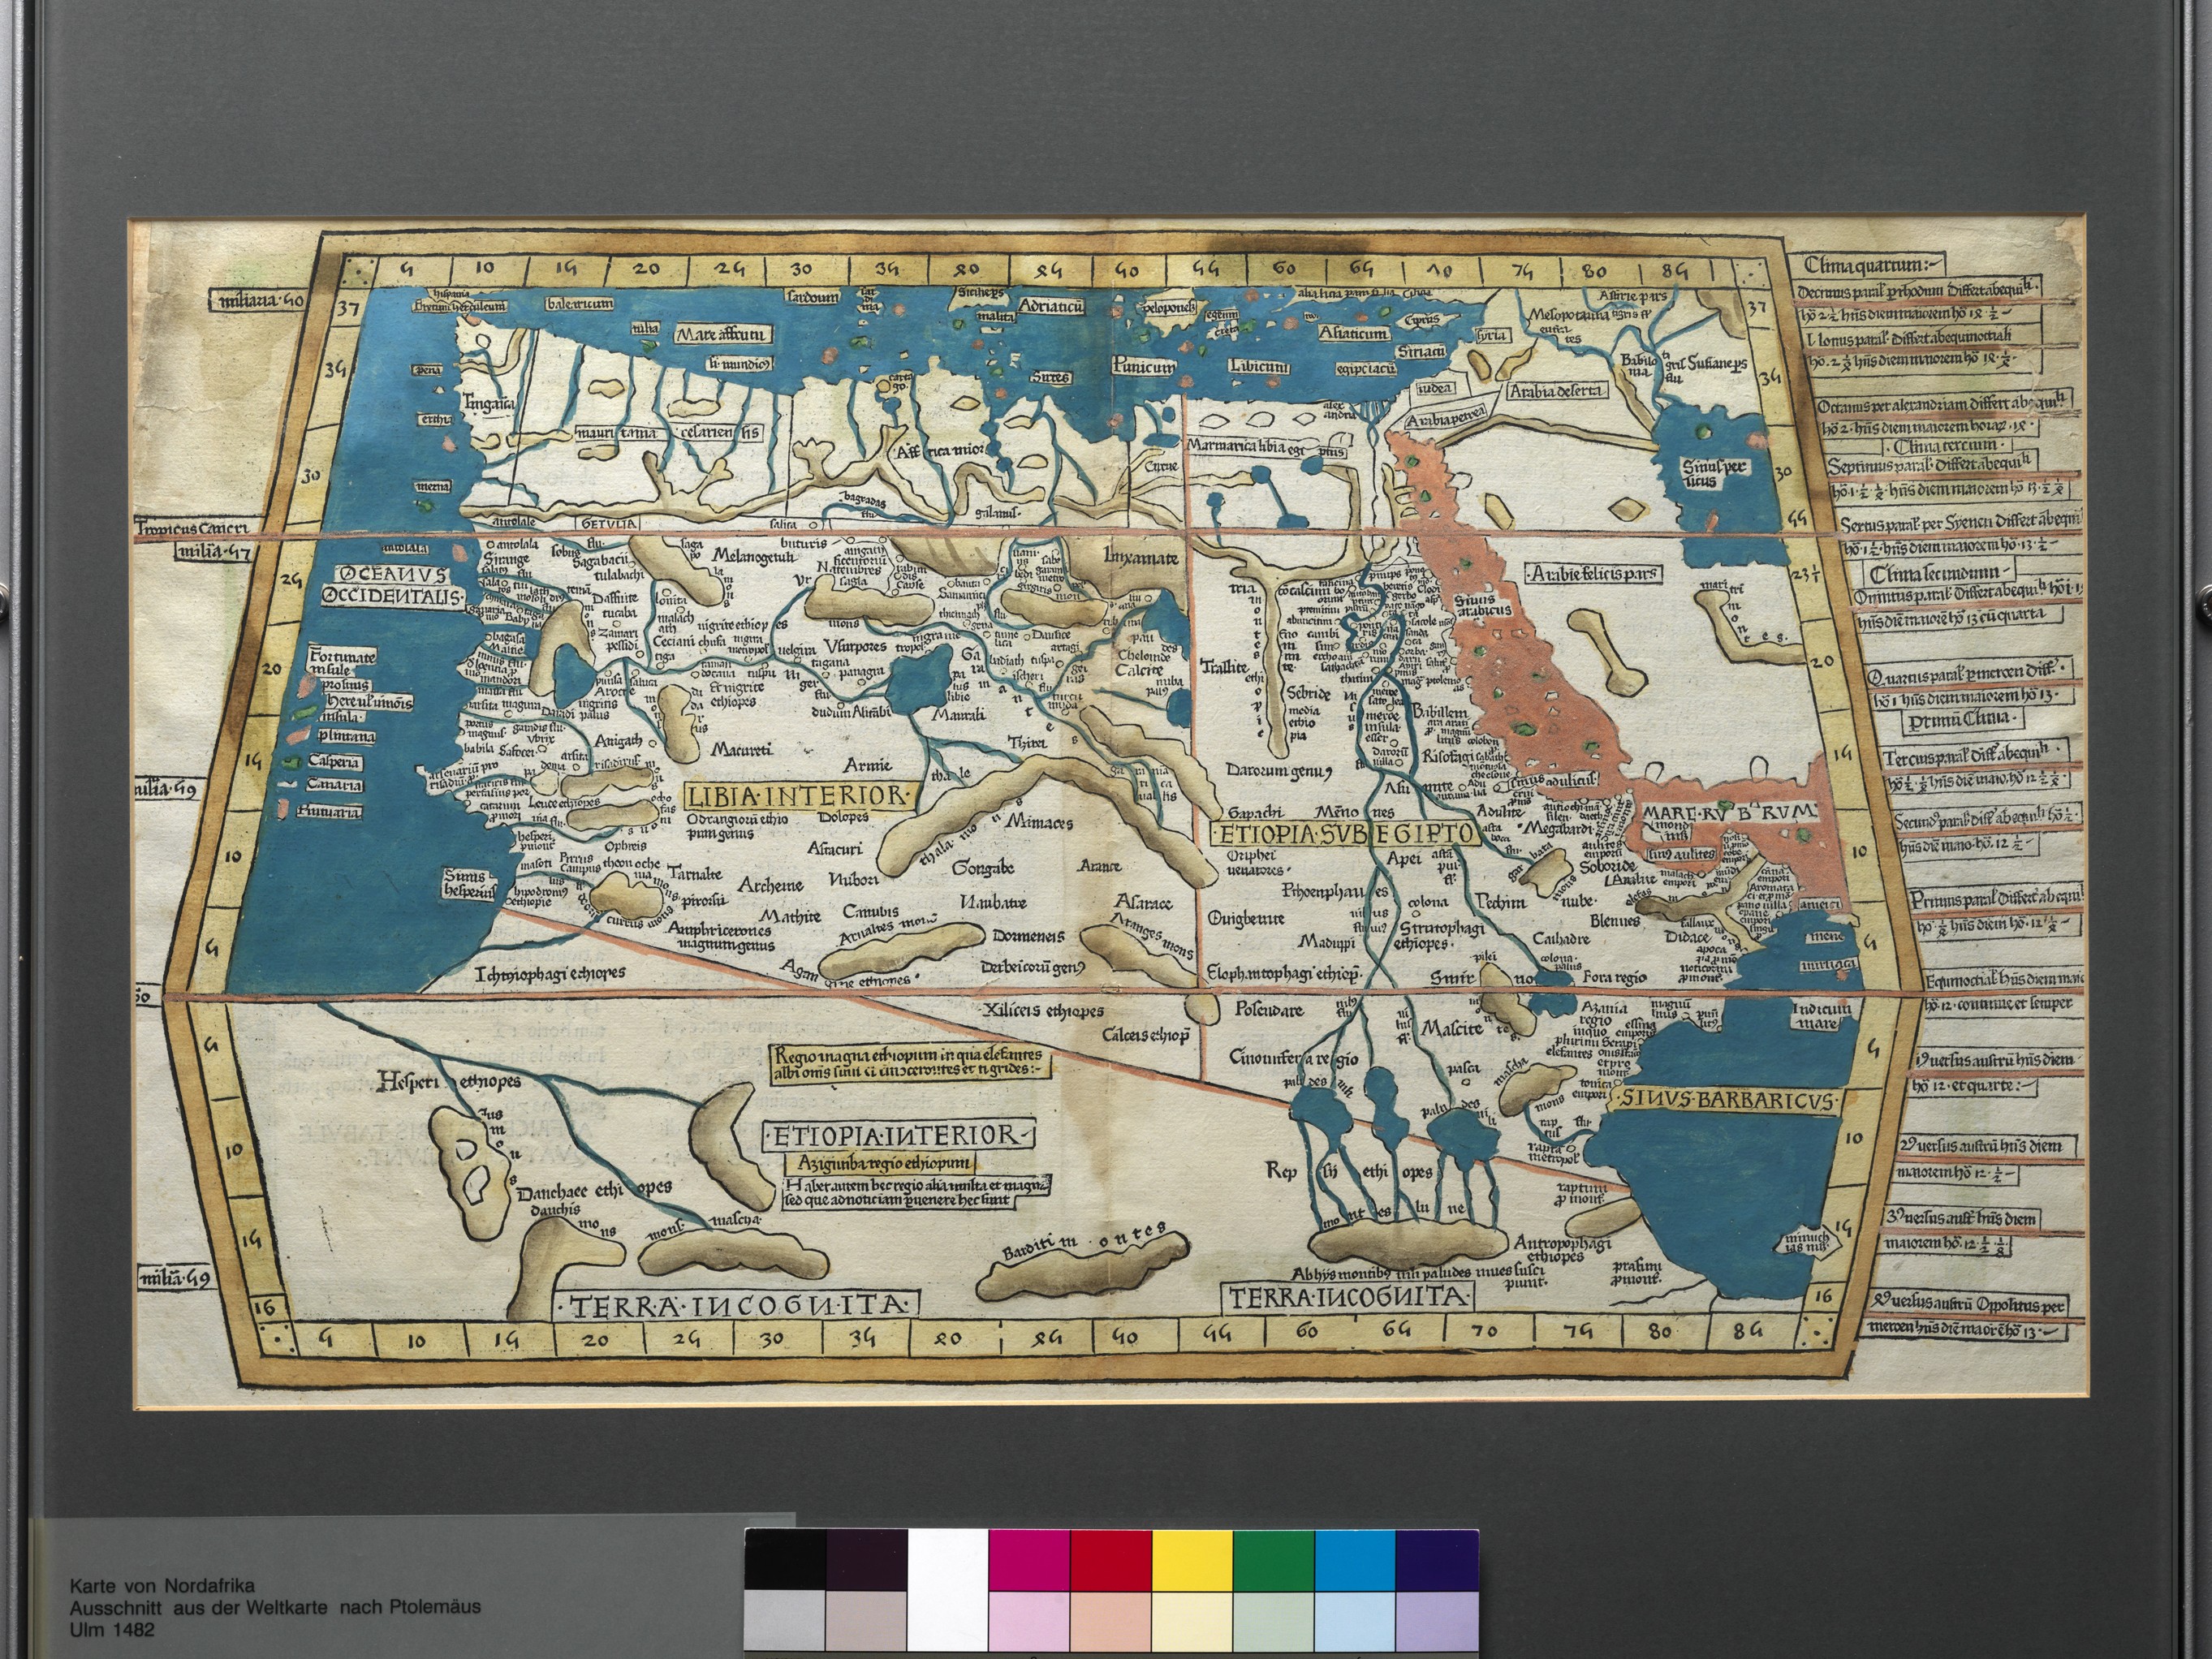 Karte von Nordafrika, Ausschnitt aus der Weltkarte nach Claudius Ptolemäus, 1482 (Städtisches Museum Schloss Rheydt CC BY)